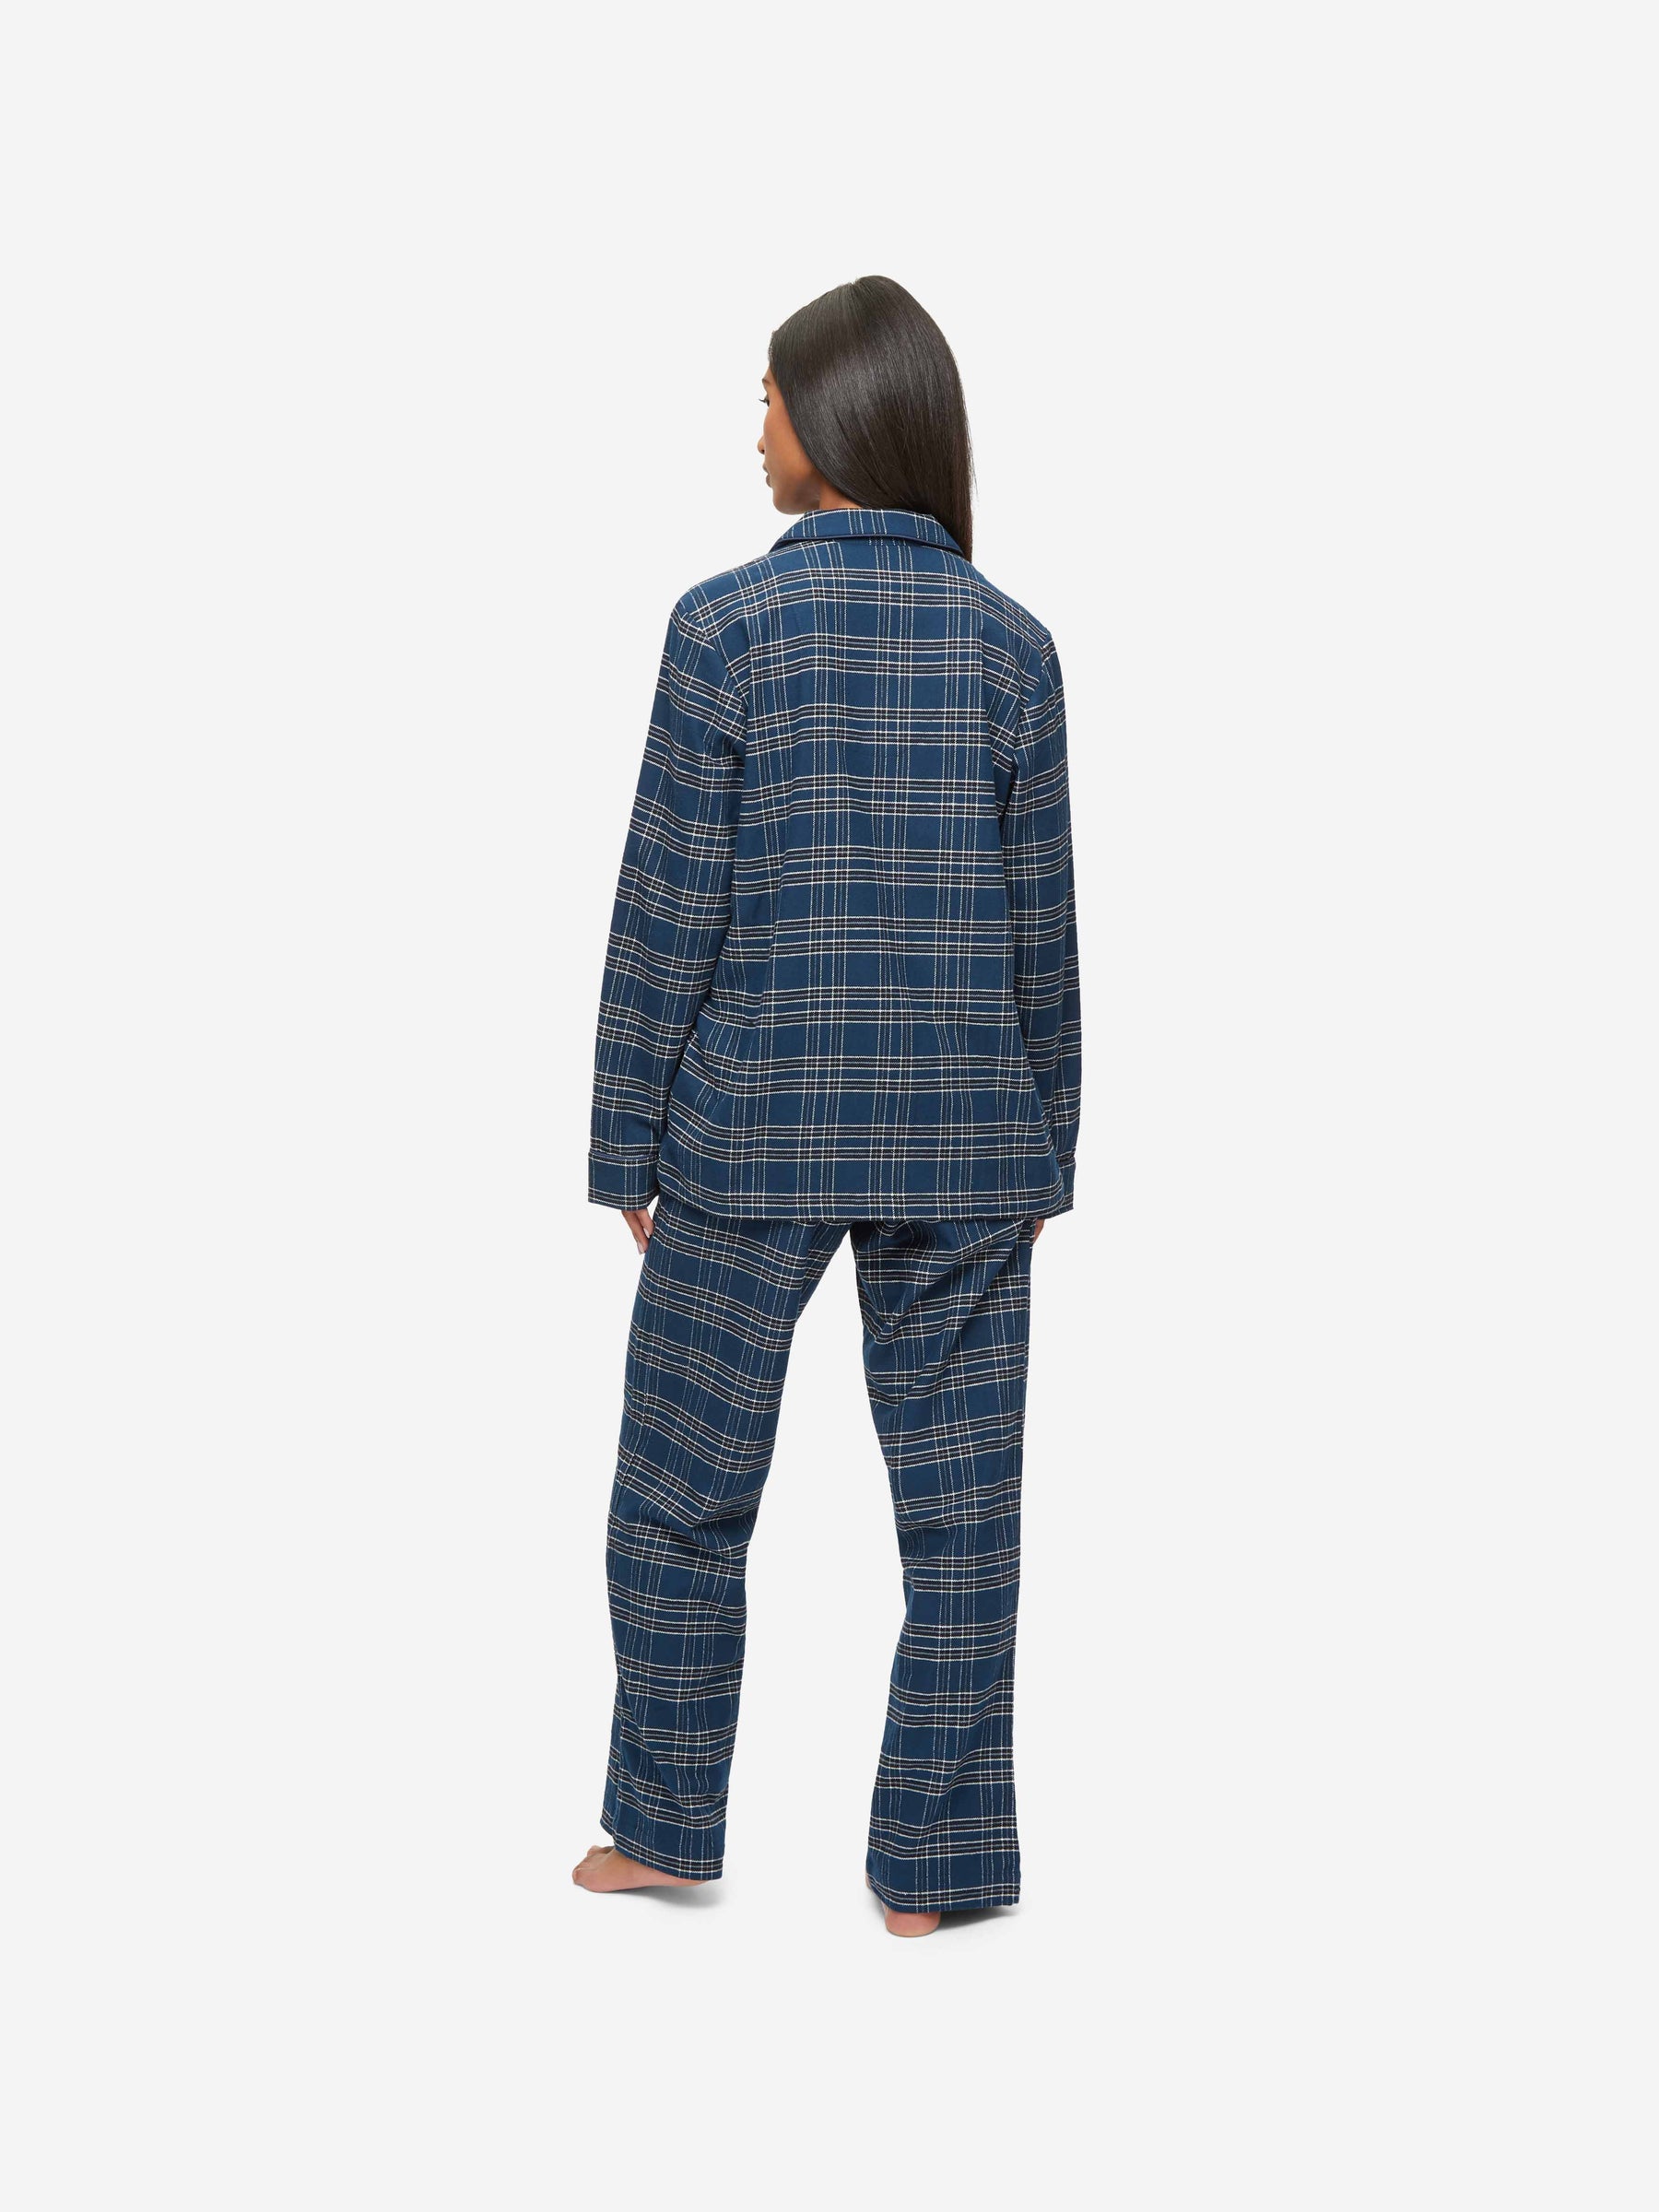 Women's Pyjamas Kelburn 30 Brushed Cotton Navy